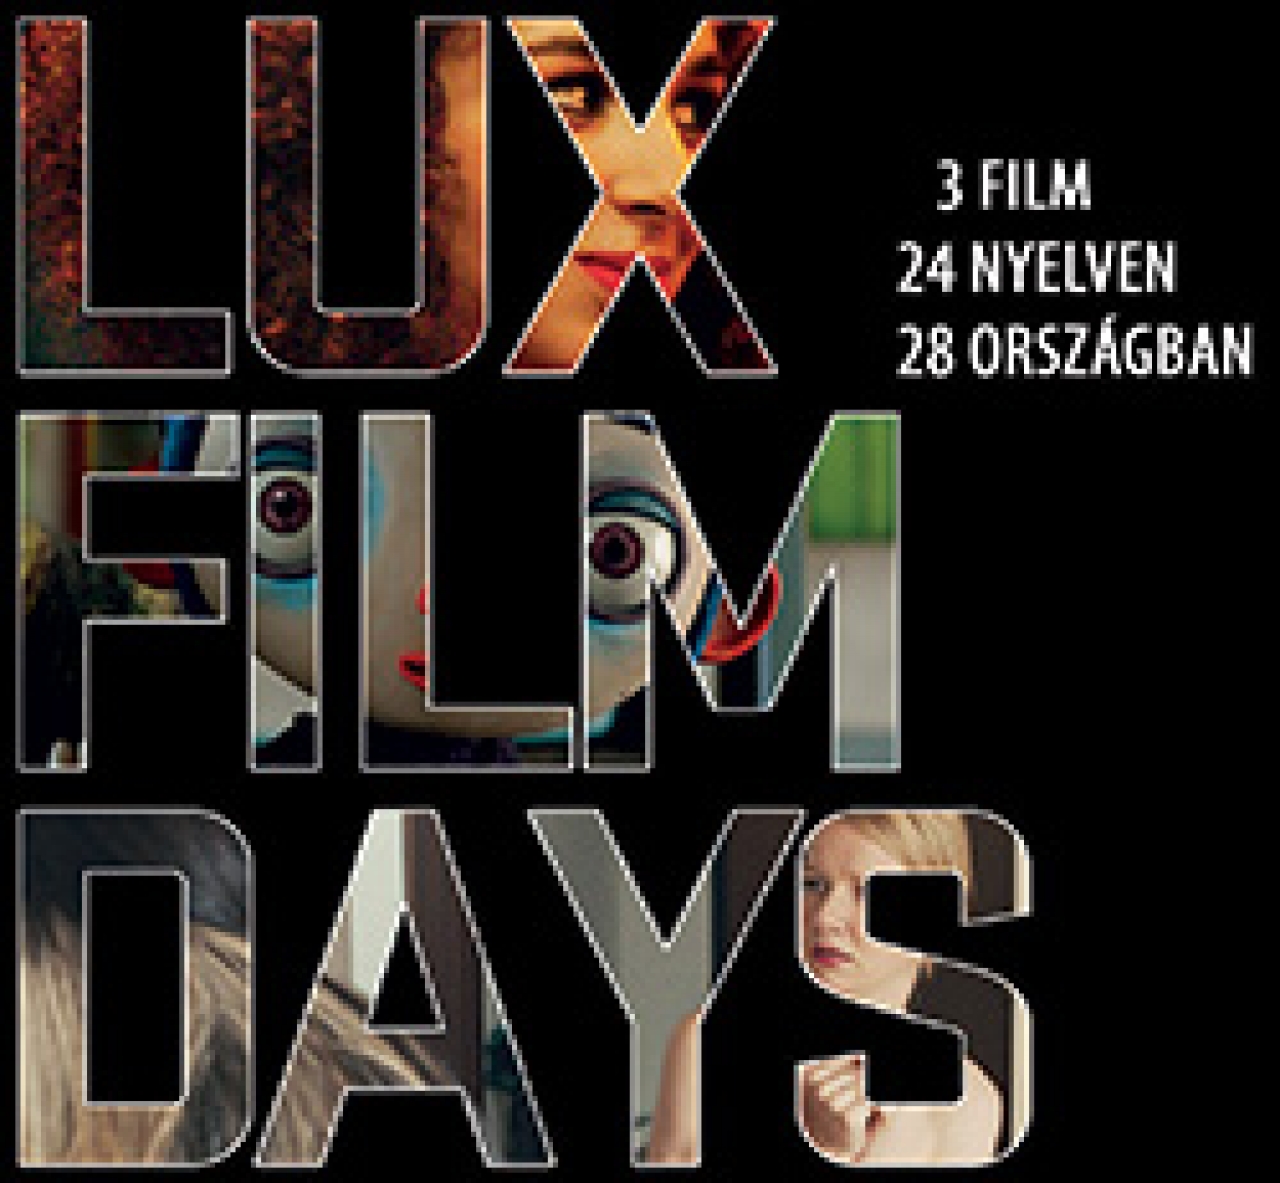 LUX-filmnapok az Uránia Nemzeti Filmszínházban